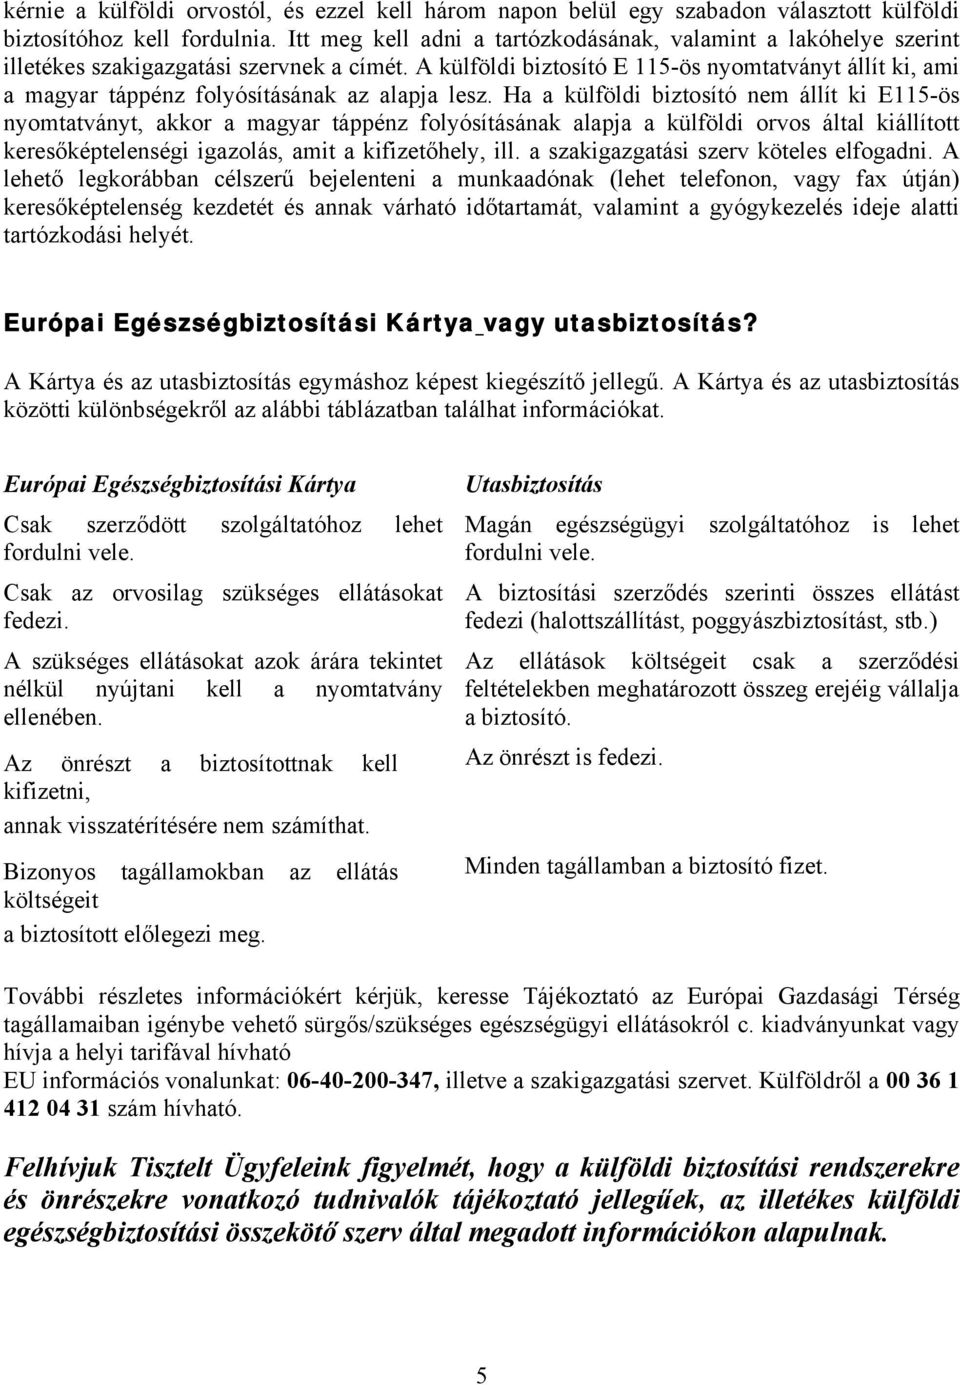 A külföldi biztosító E 115-ös nyomtatványt állít ki, ami a magyar táppénz folyósításának az alapja lesz.